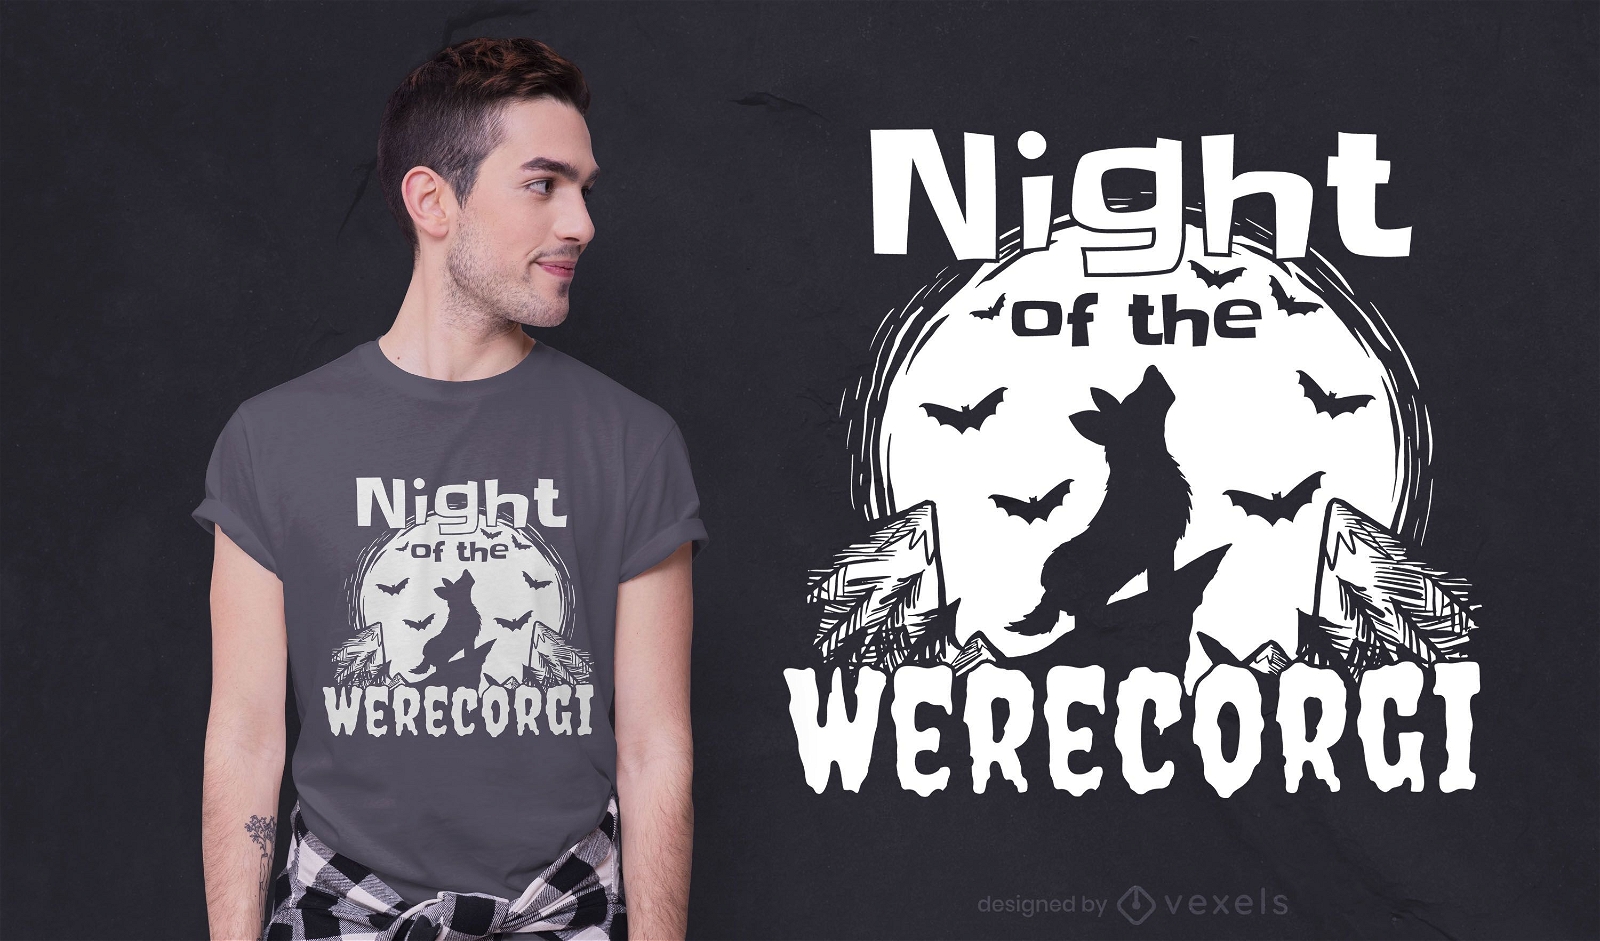 Werecorgi night t-shirt design